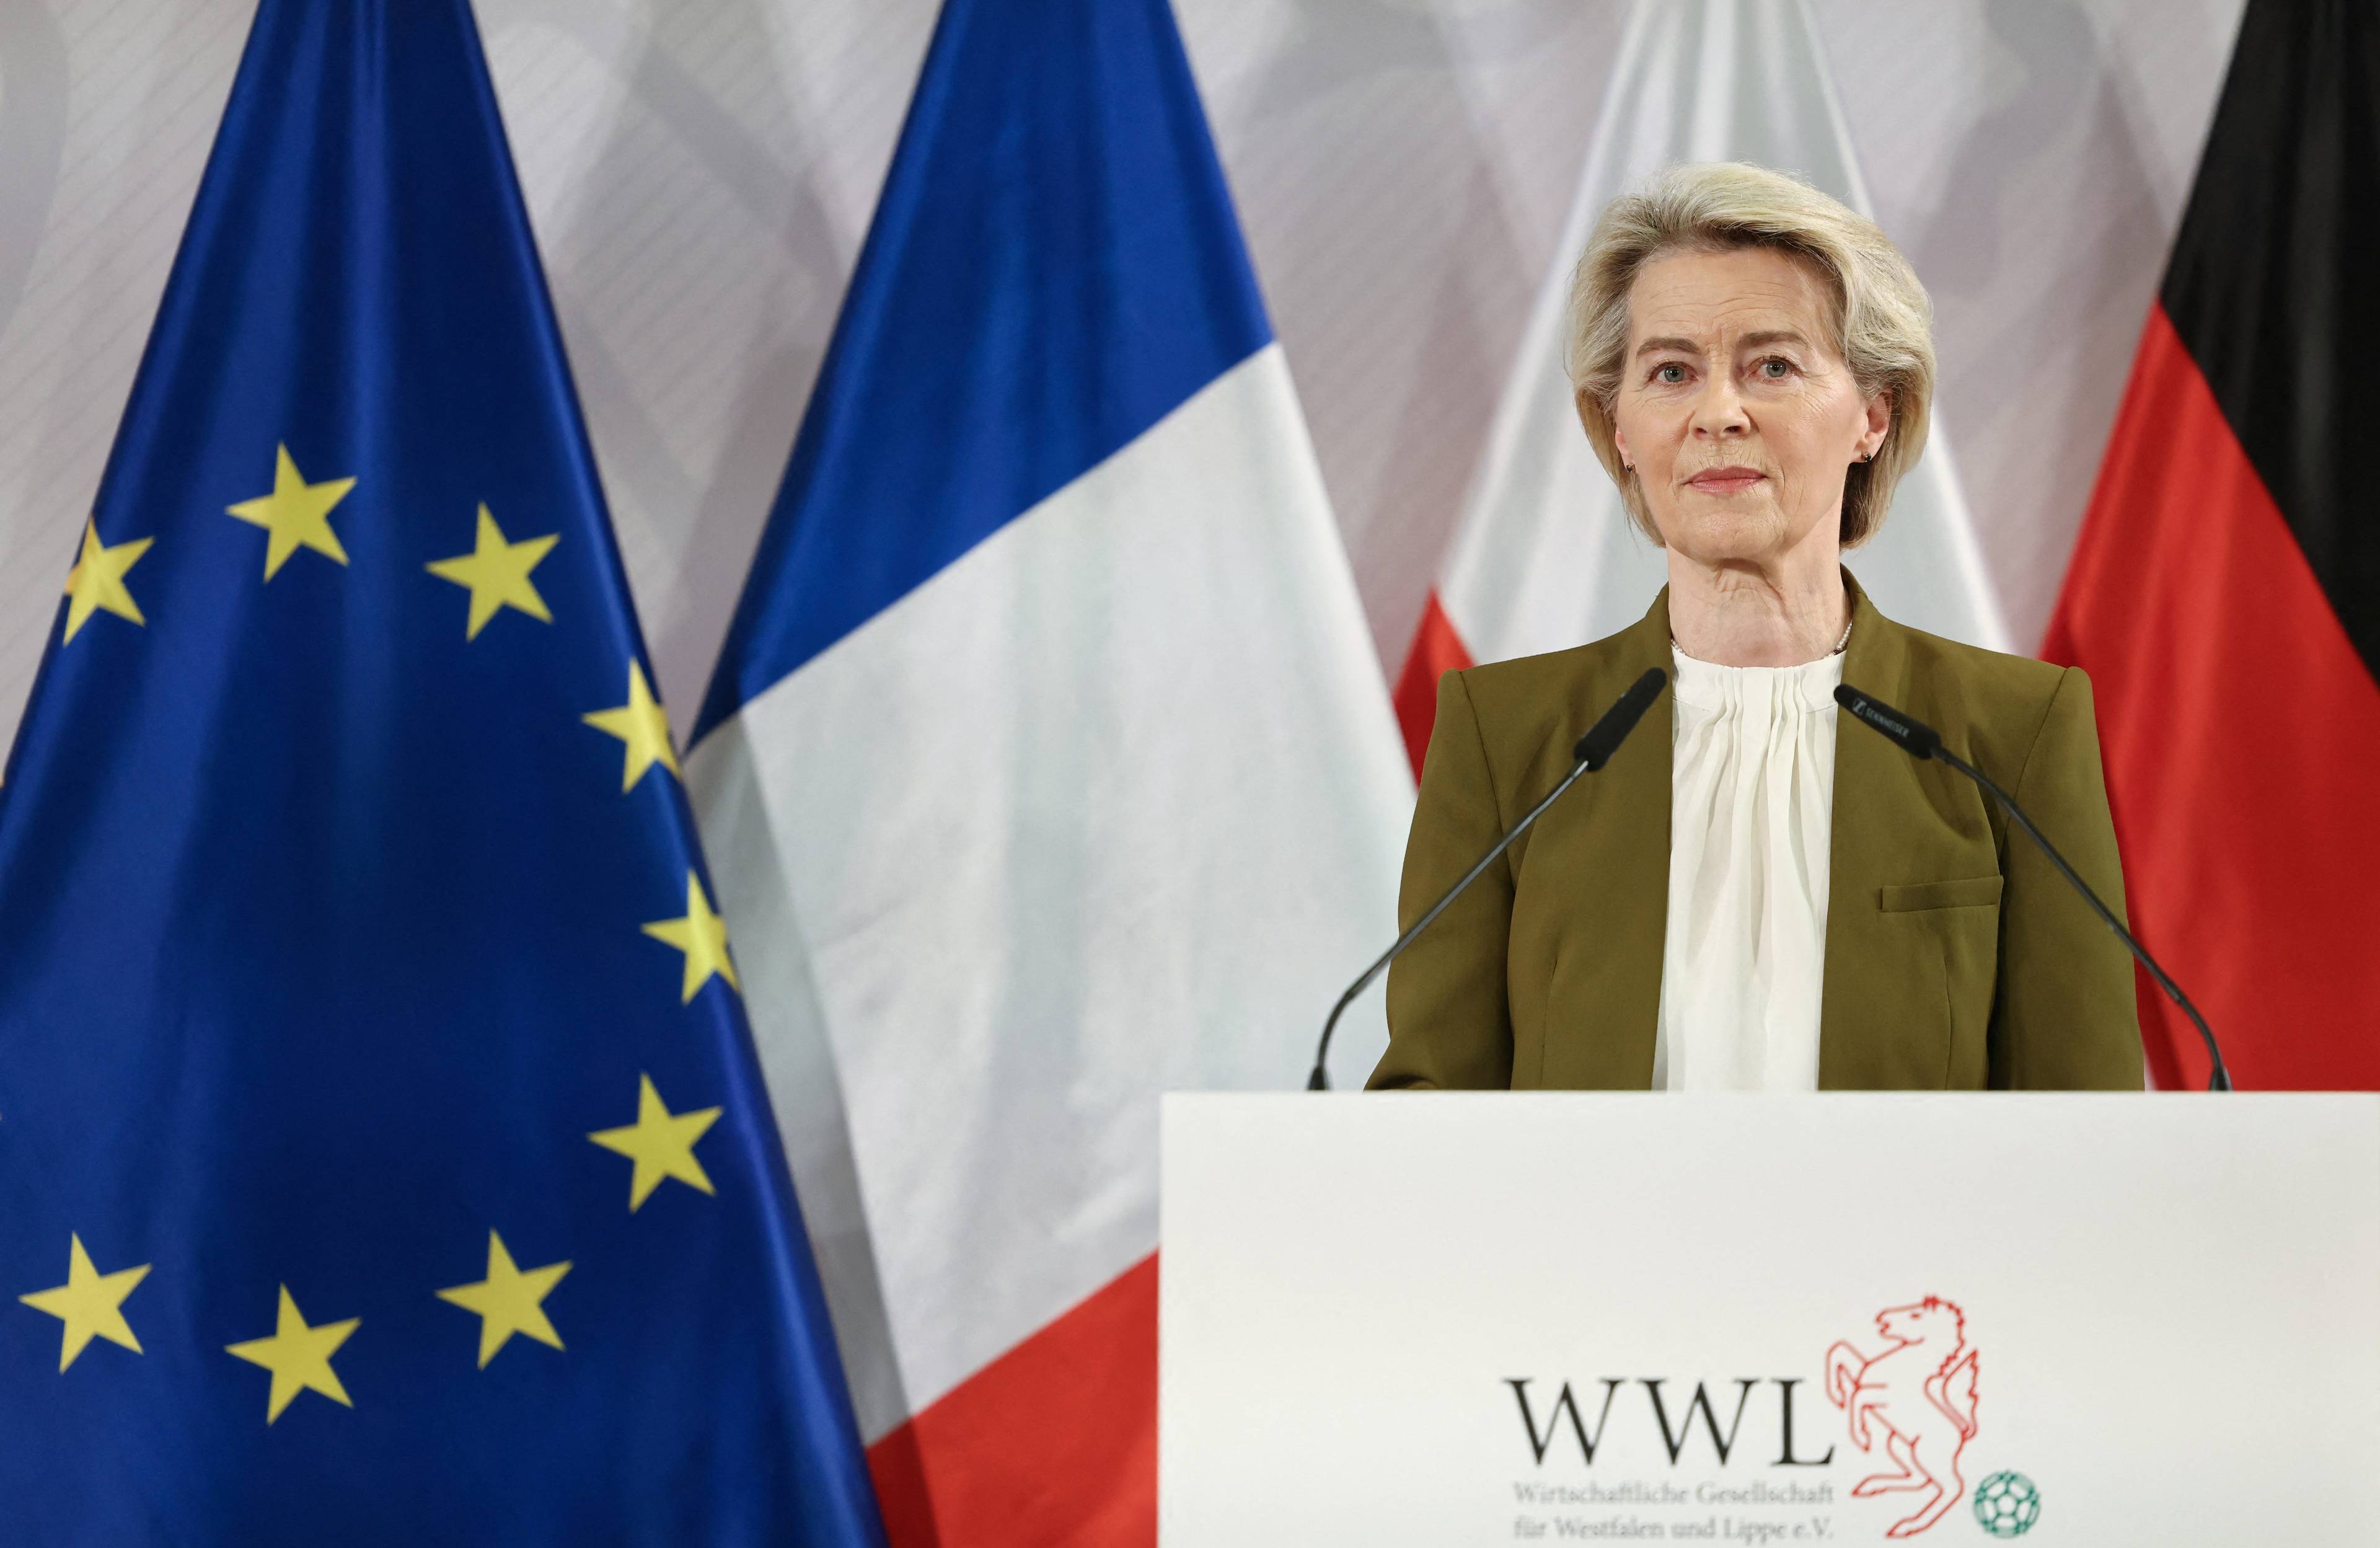 Przewodnicząca Komisji Europejskiej Ursula von der Leyen przemawia na tle flag UE i Francji